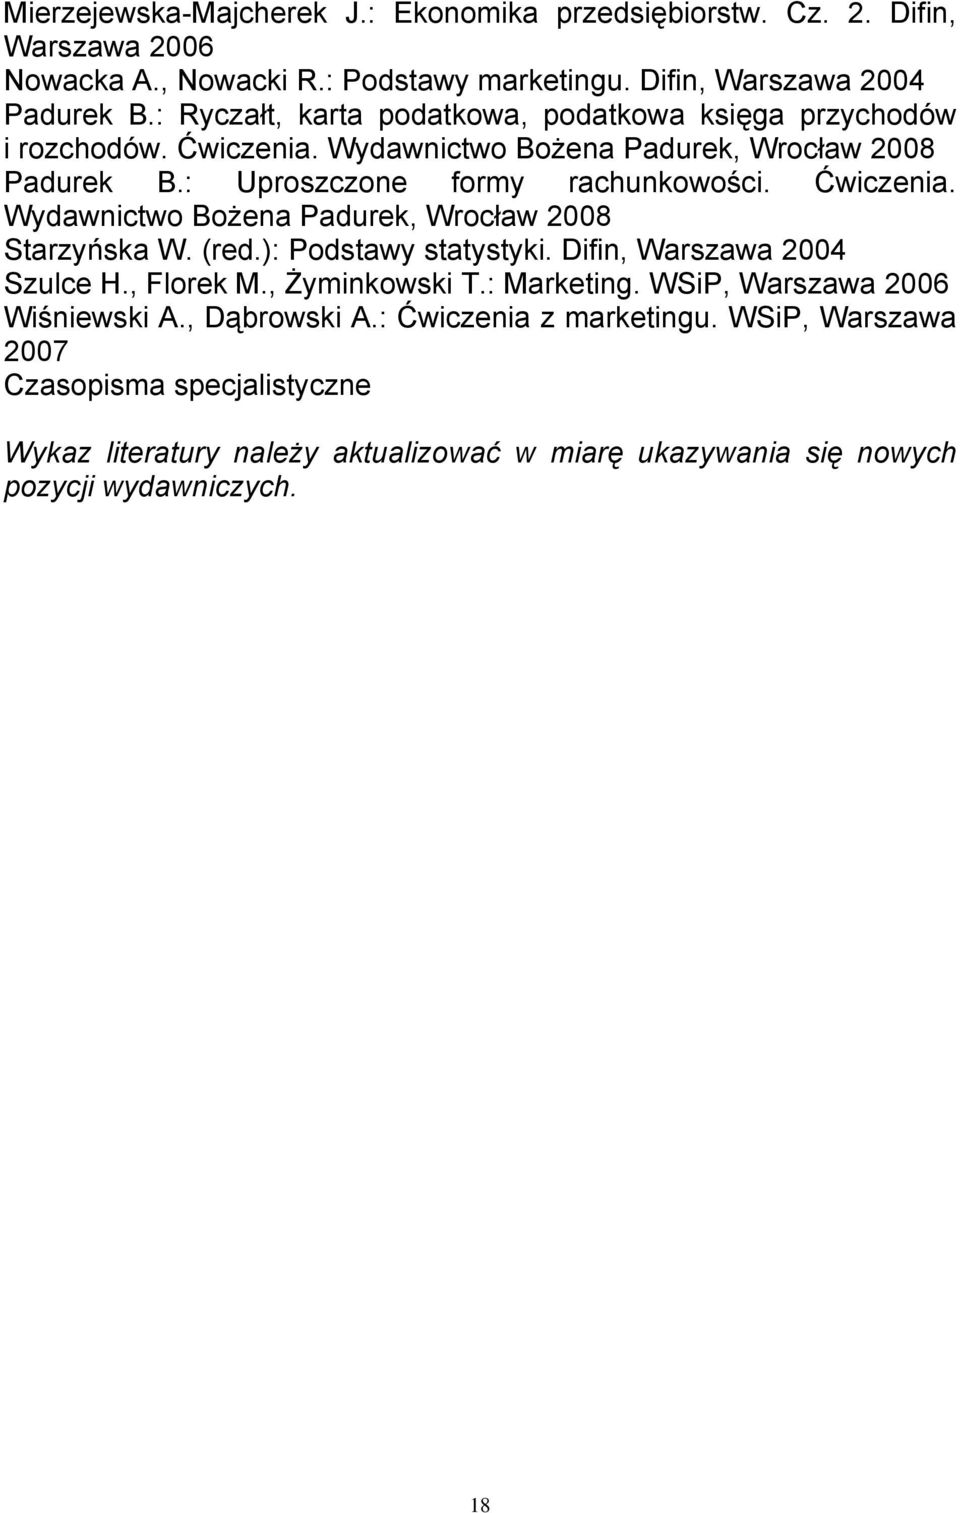 Ćwiczenia. Wydawnictwo Bożena Padurek, Wrocław 2008 Starzyńska W. (red.): Podstawy statystyki. Difin, Warszawa 2004 Szulce H., Florek M., Żyminkowski T.: Marketing.